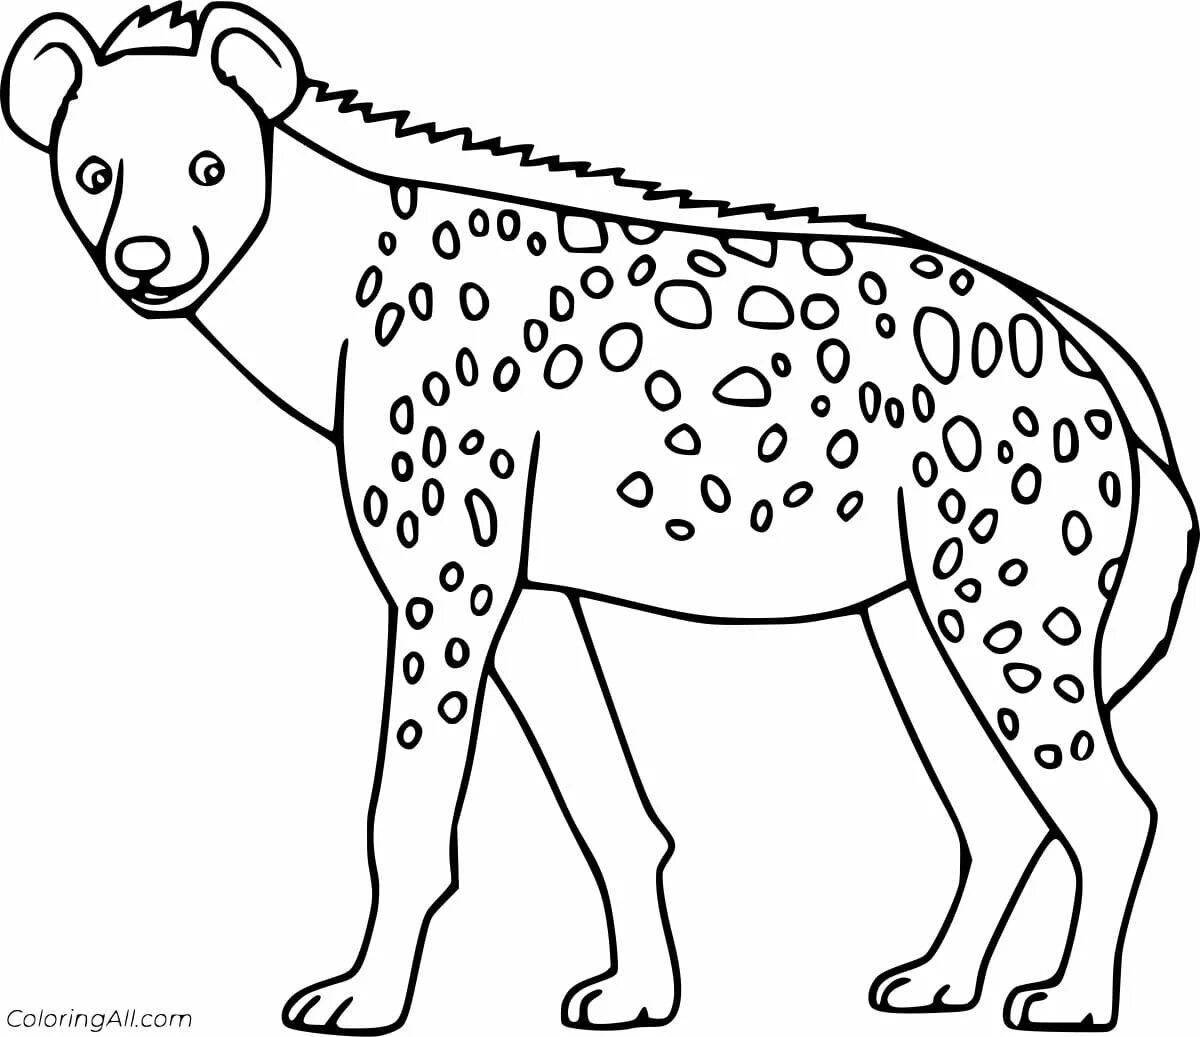 Увлекательная раскраска гиена для детей